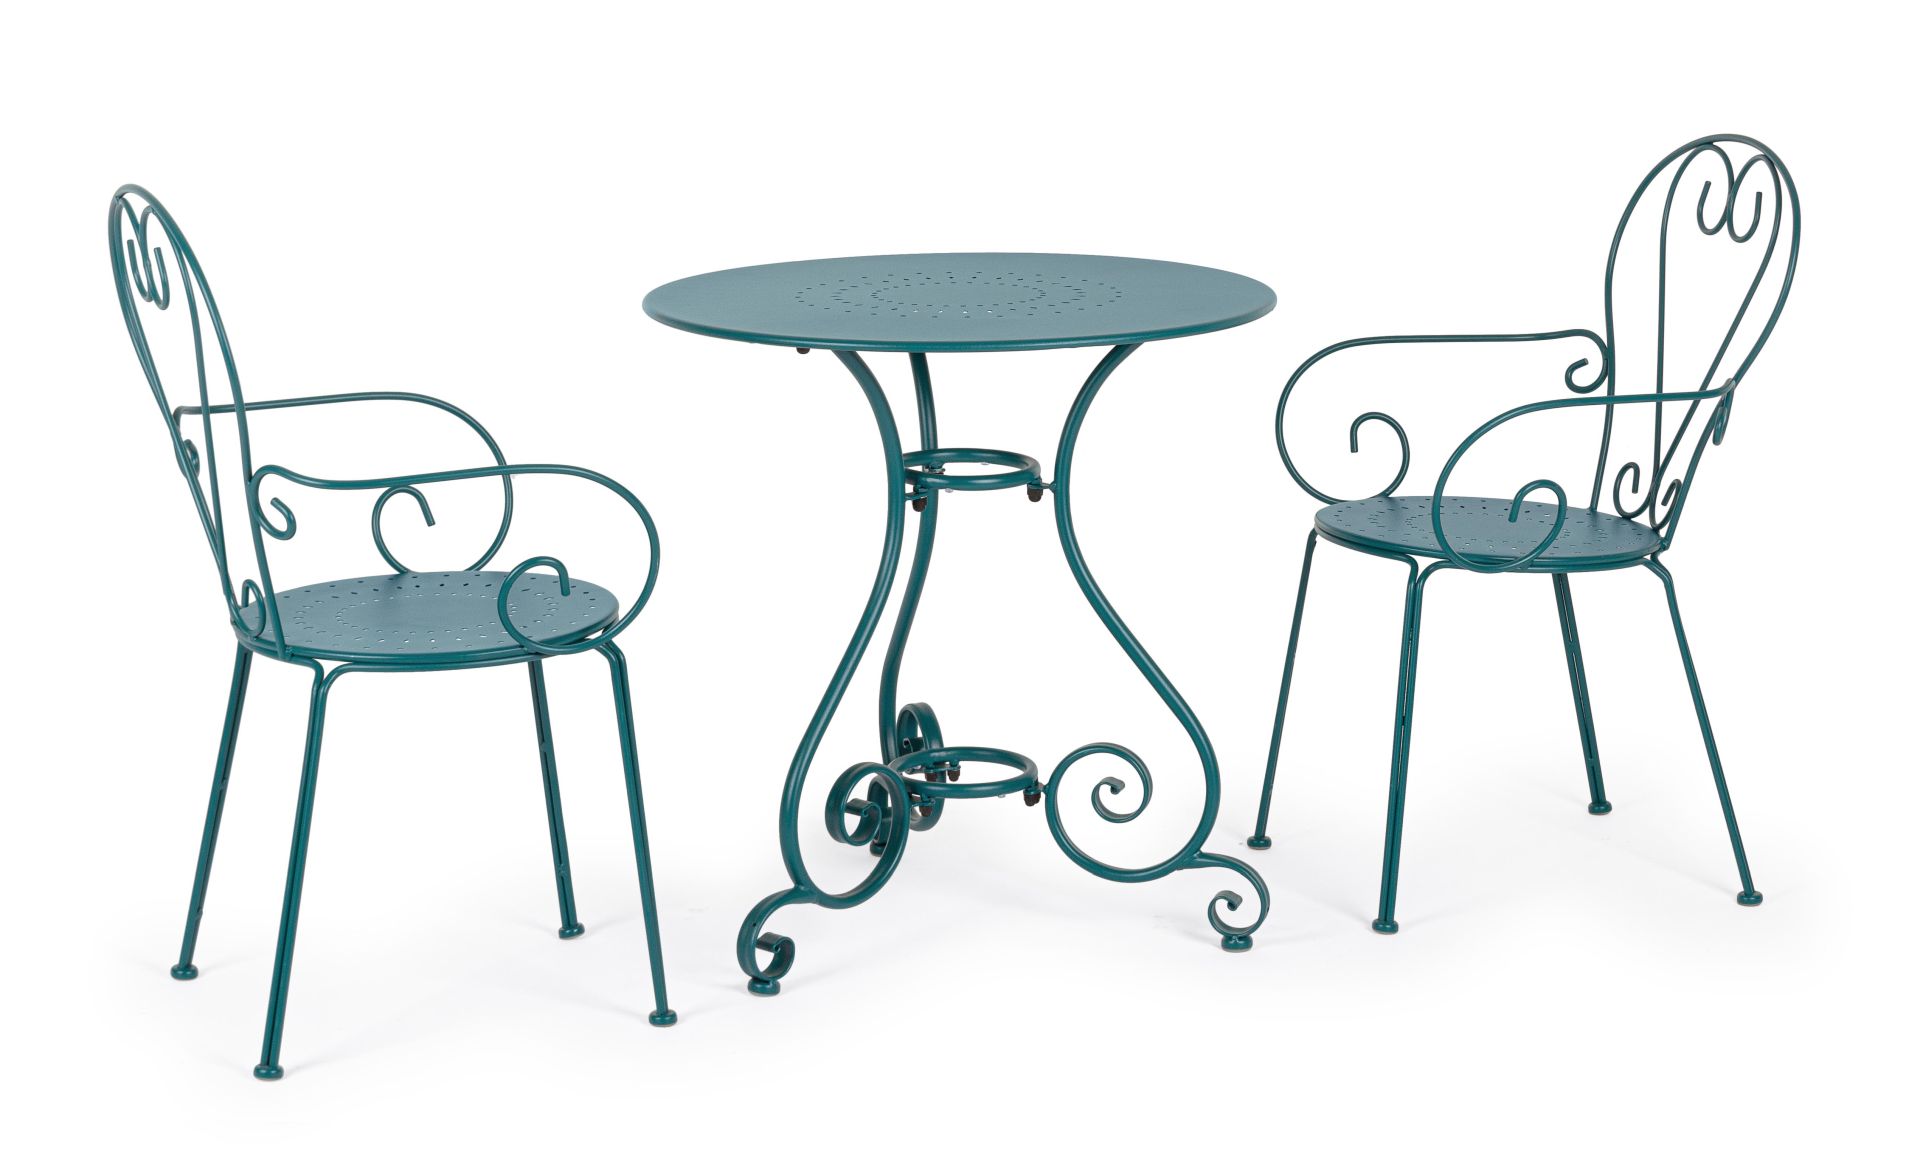 Der Gartentisch Etienne überzeugt mit seinem klassischen Design. Gefertigt wurde er aus Aluminium, welches einen blauen Farbton besitzt. Das Gestell ist aus auch Aluminium und hat eine blauen Farbe. Der Tisch verfügt über einen Durchmesser von 70 cm und i